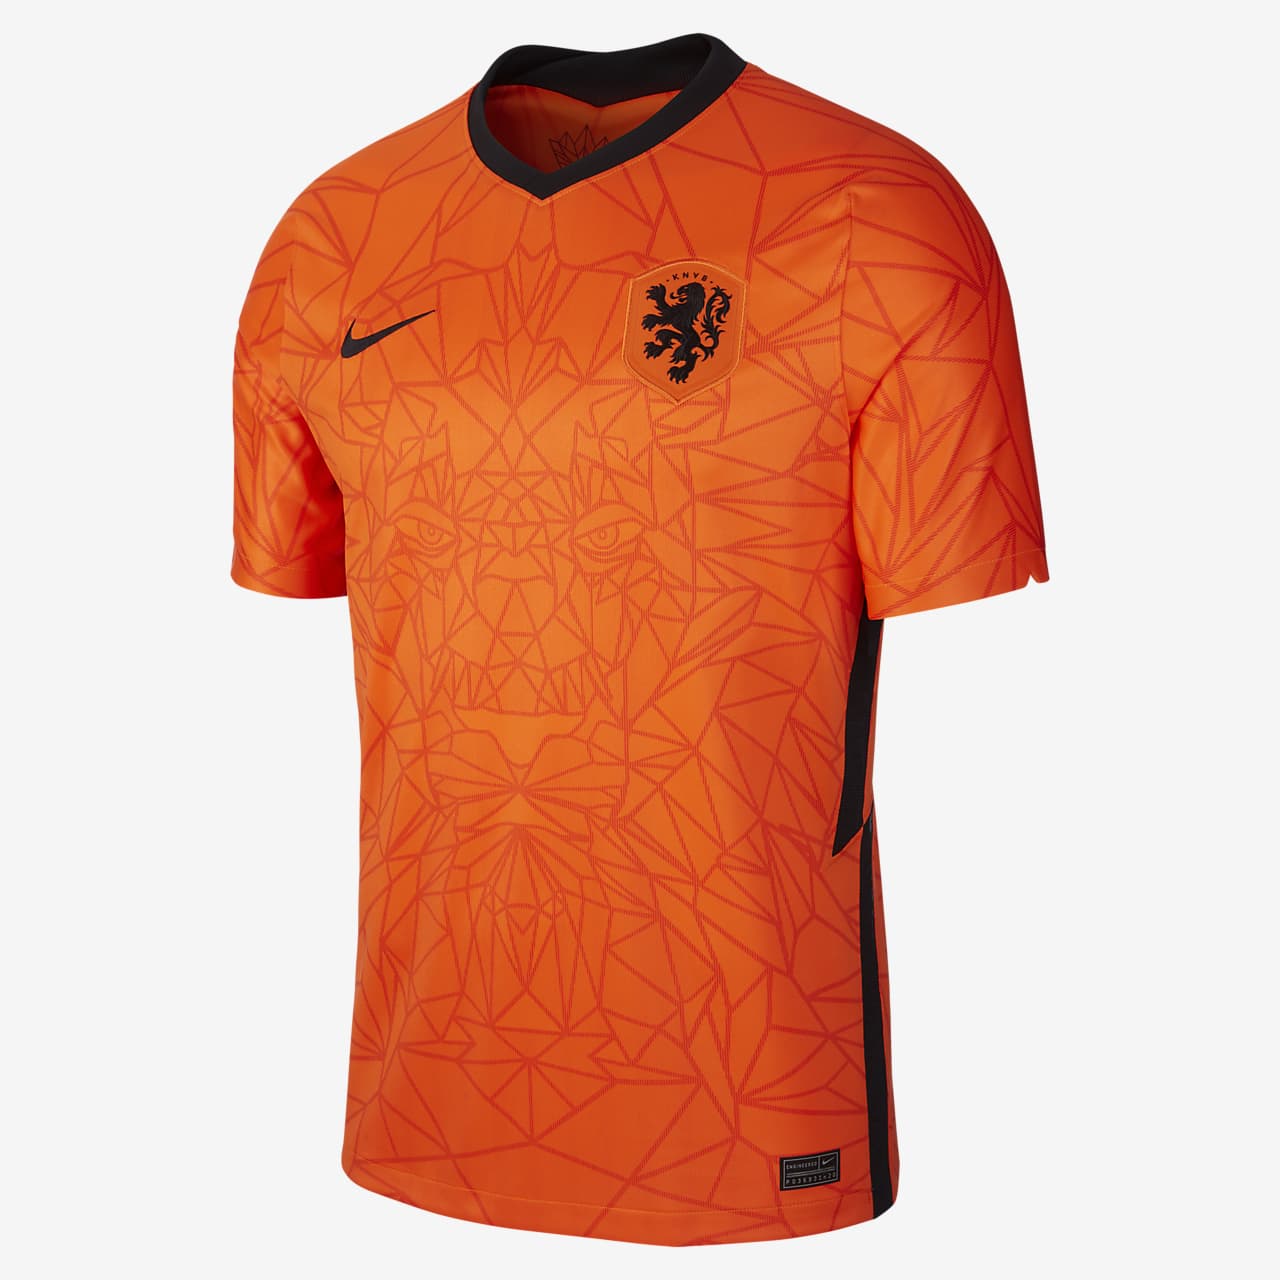 Primera equipación Stadium Países Bajos 2020 Camiseta fútbol - Hombre. Nike ES